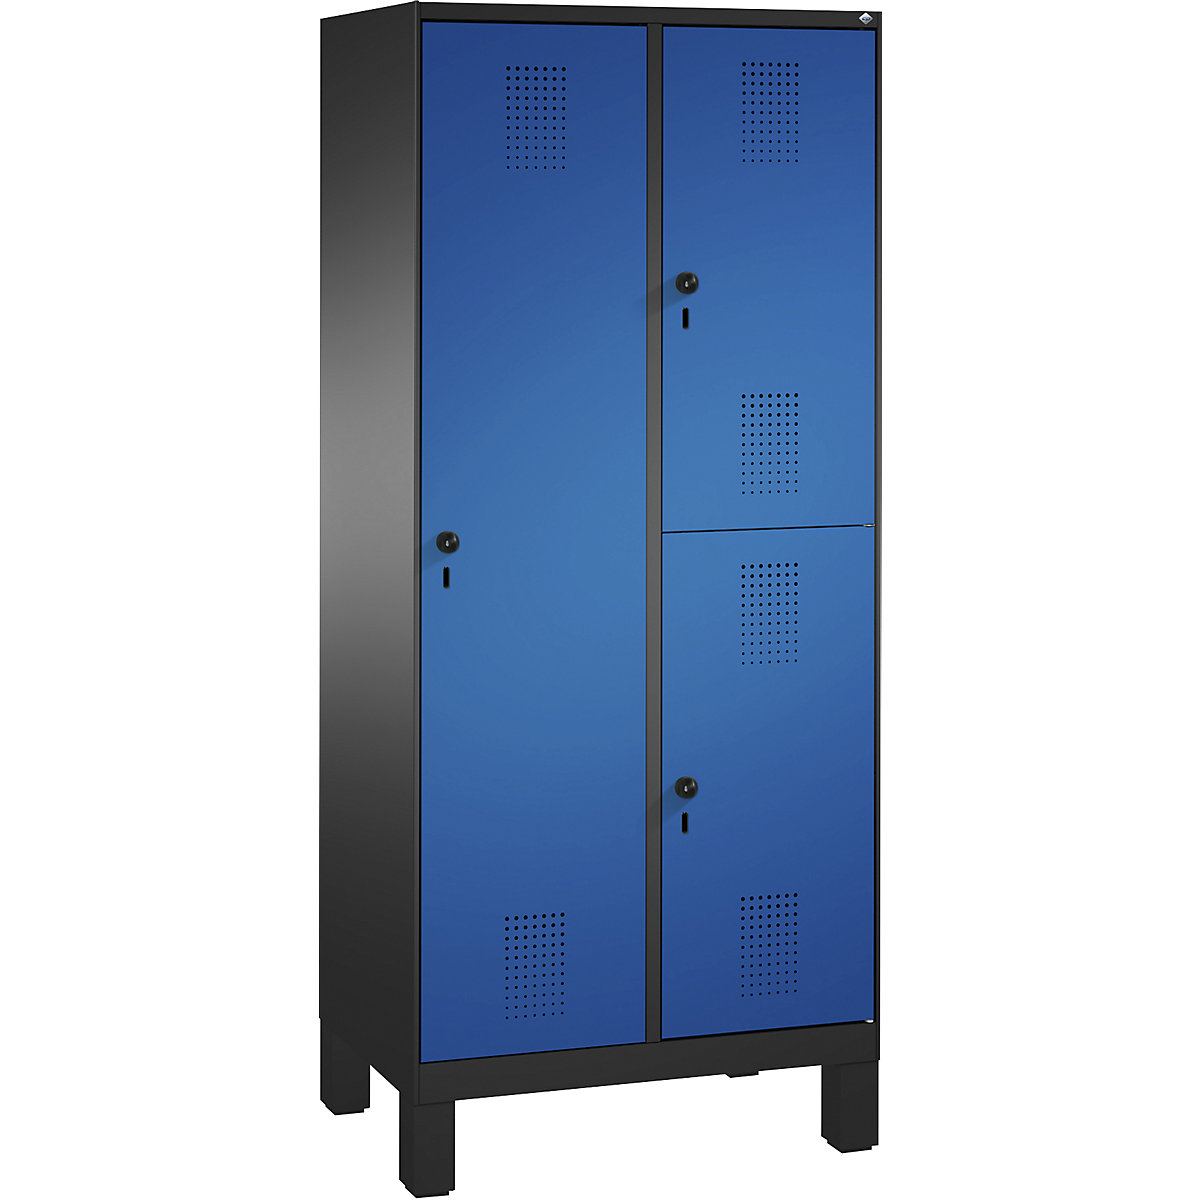 Kombinovaná skříň EVOLO, jednopatrová a dvoupatrová – C+P, 2 oddíly, 3 dveře, šířka oddílu 400 mm, s nohami, černošedá / enciánová modrá-11